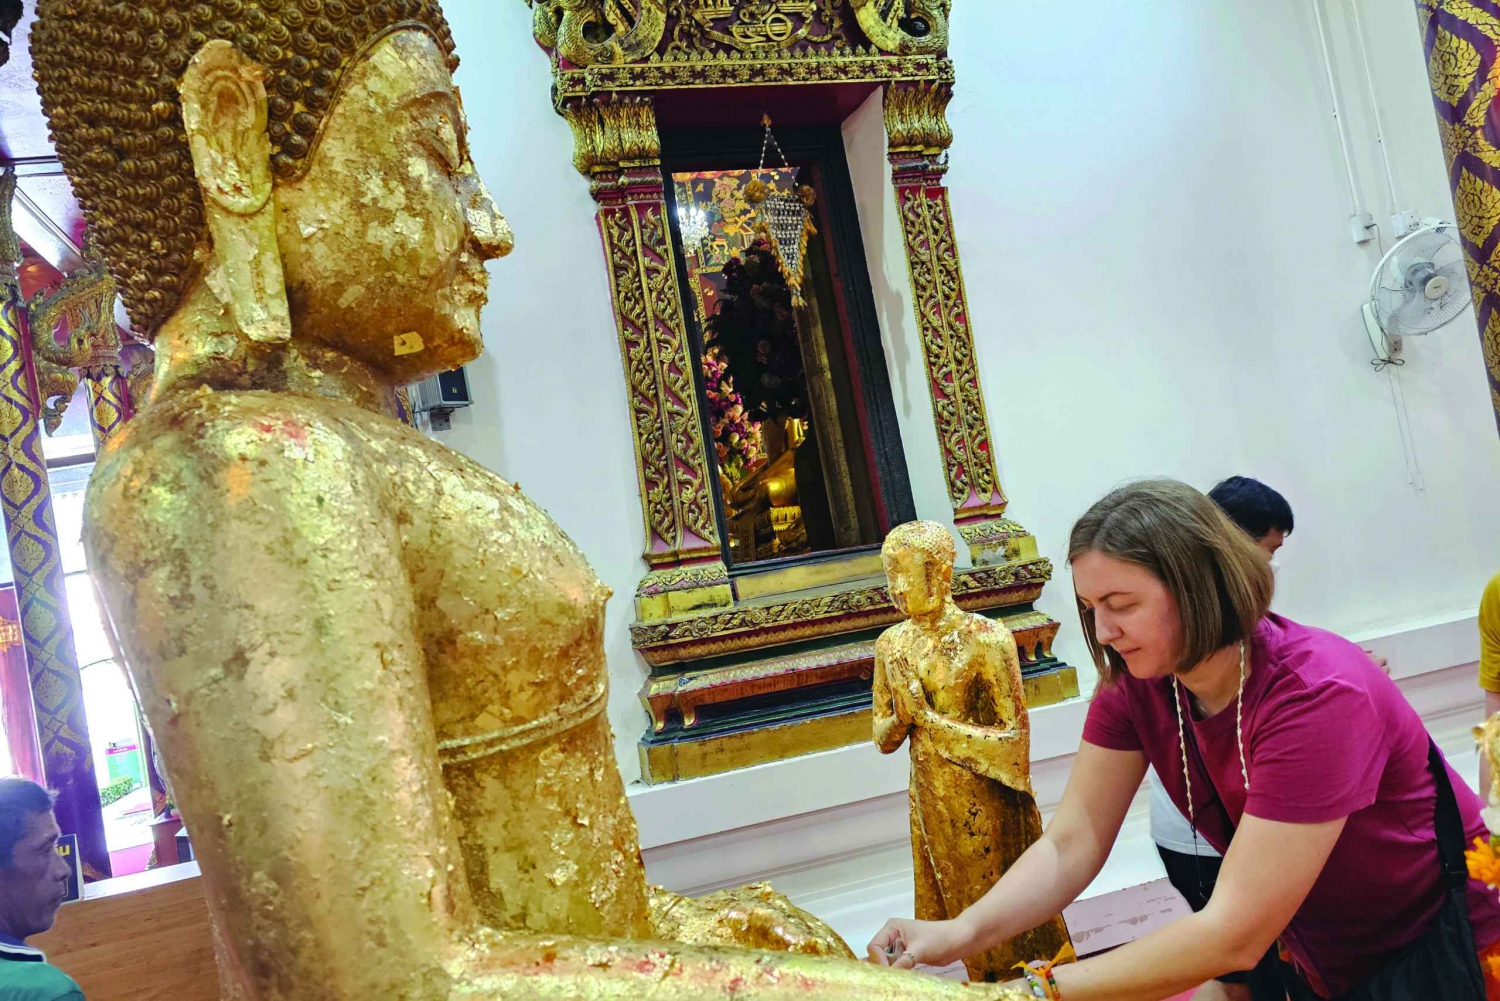 Doświadczenie buddyjskie: ceremonia śpiewu i błogosławieństwa